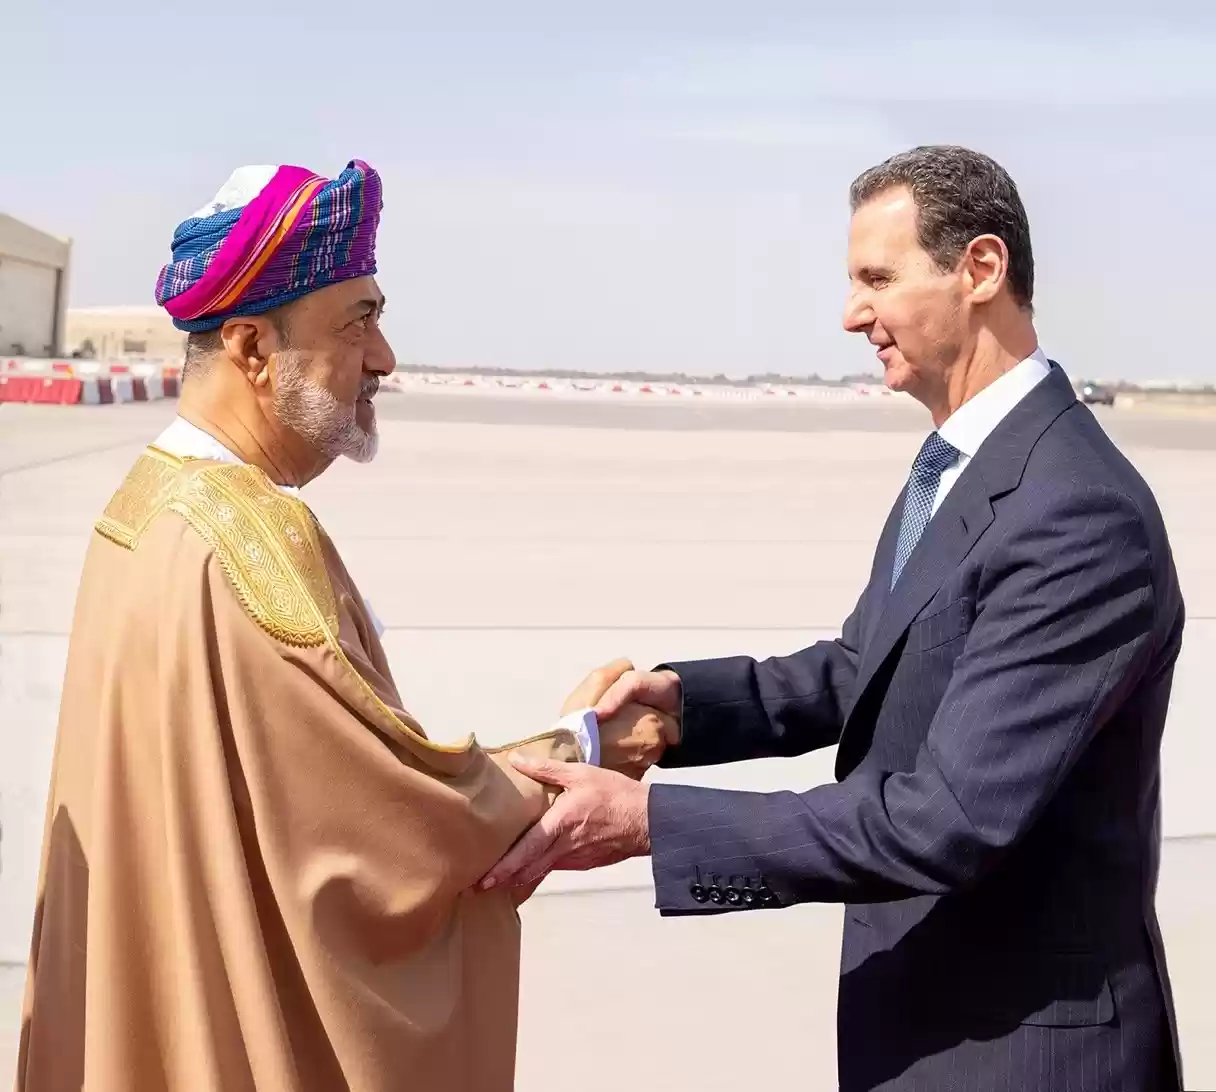 سلطان عمان يستقبل بشار الأسد في زيارة عمل لمسقط (صور)